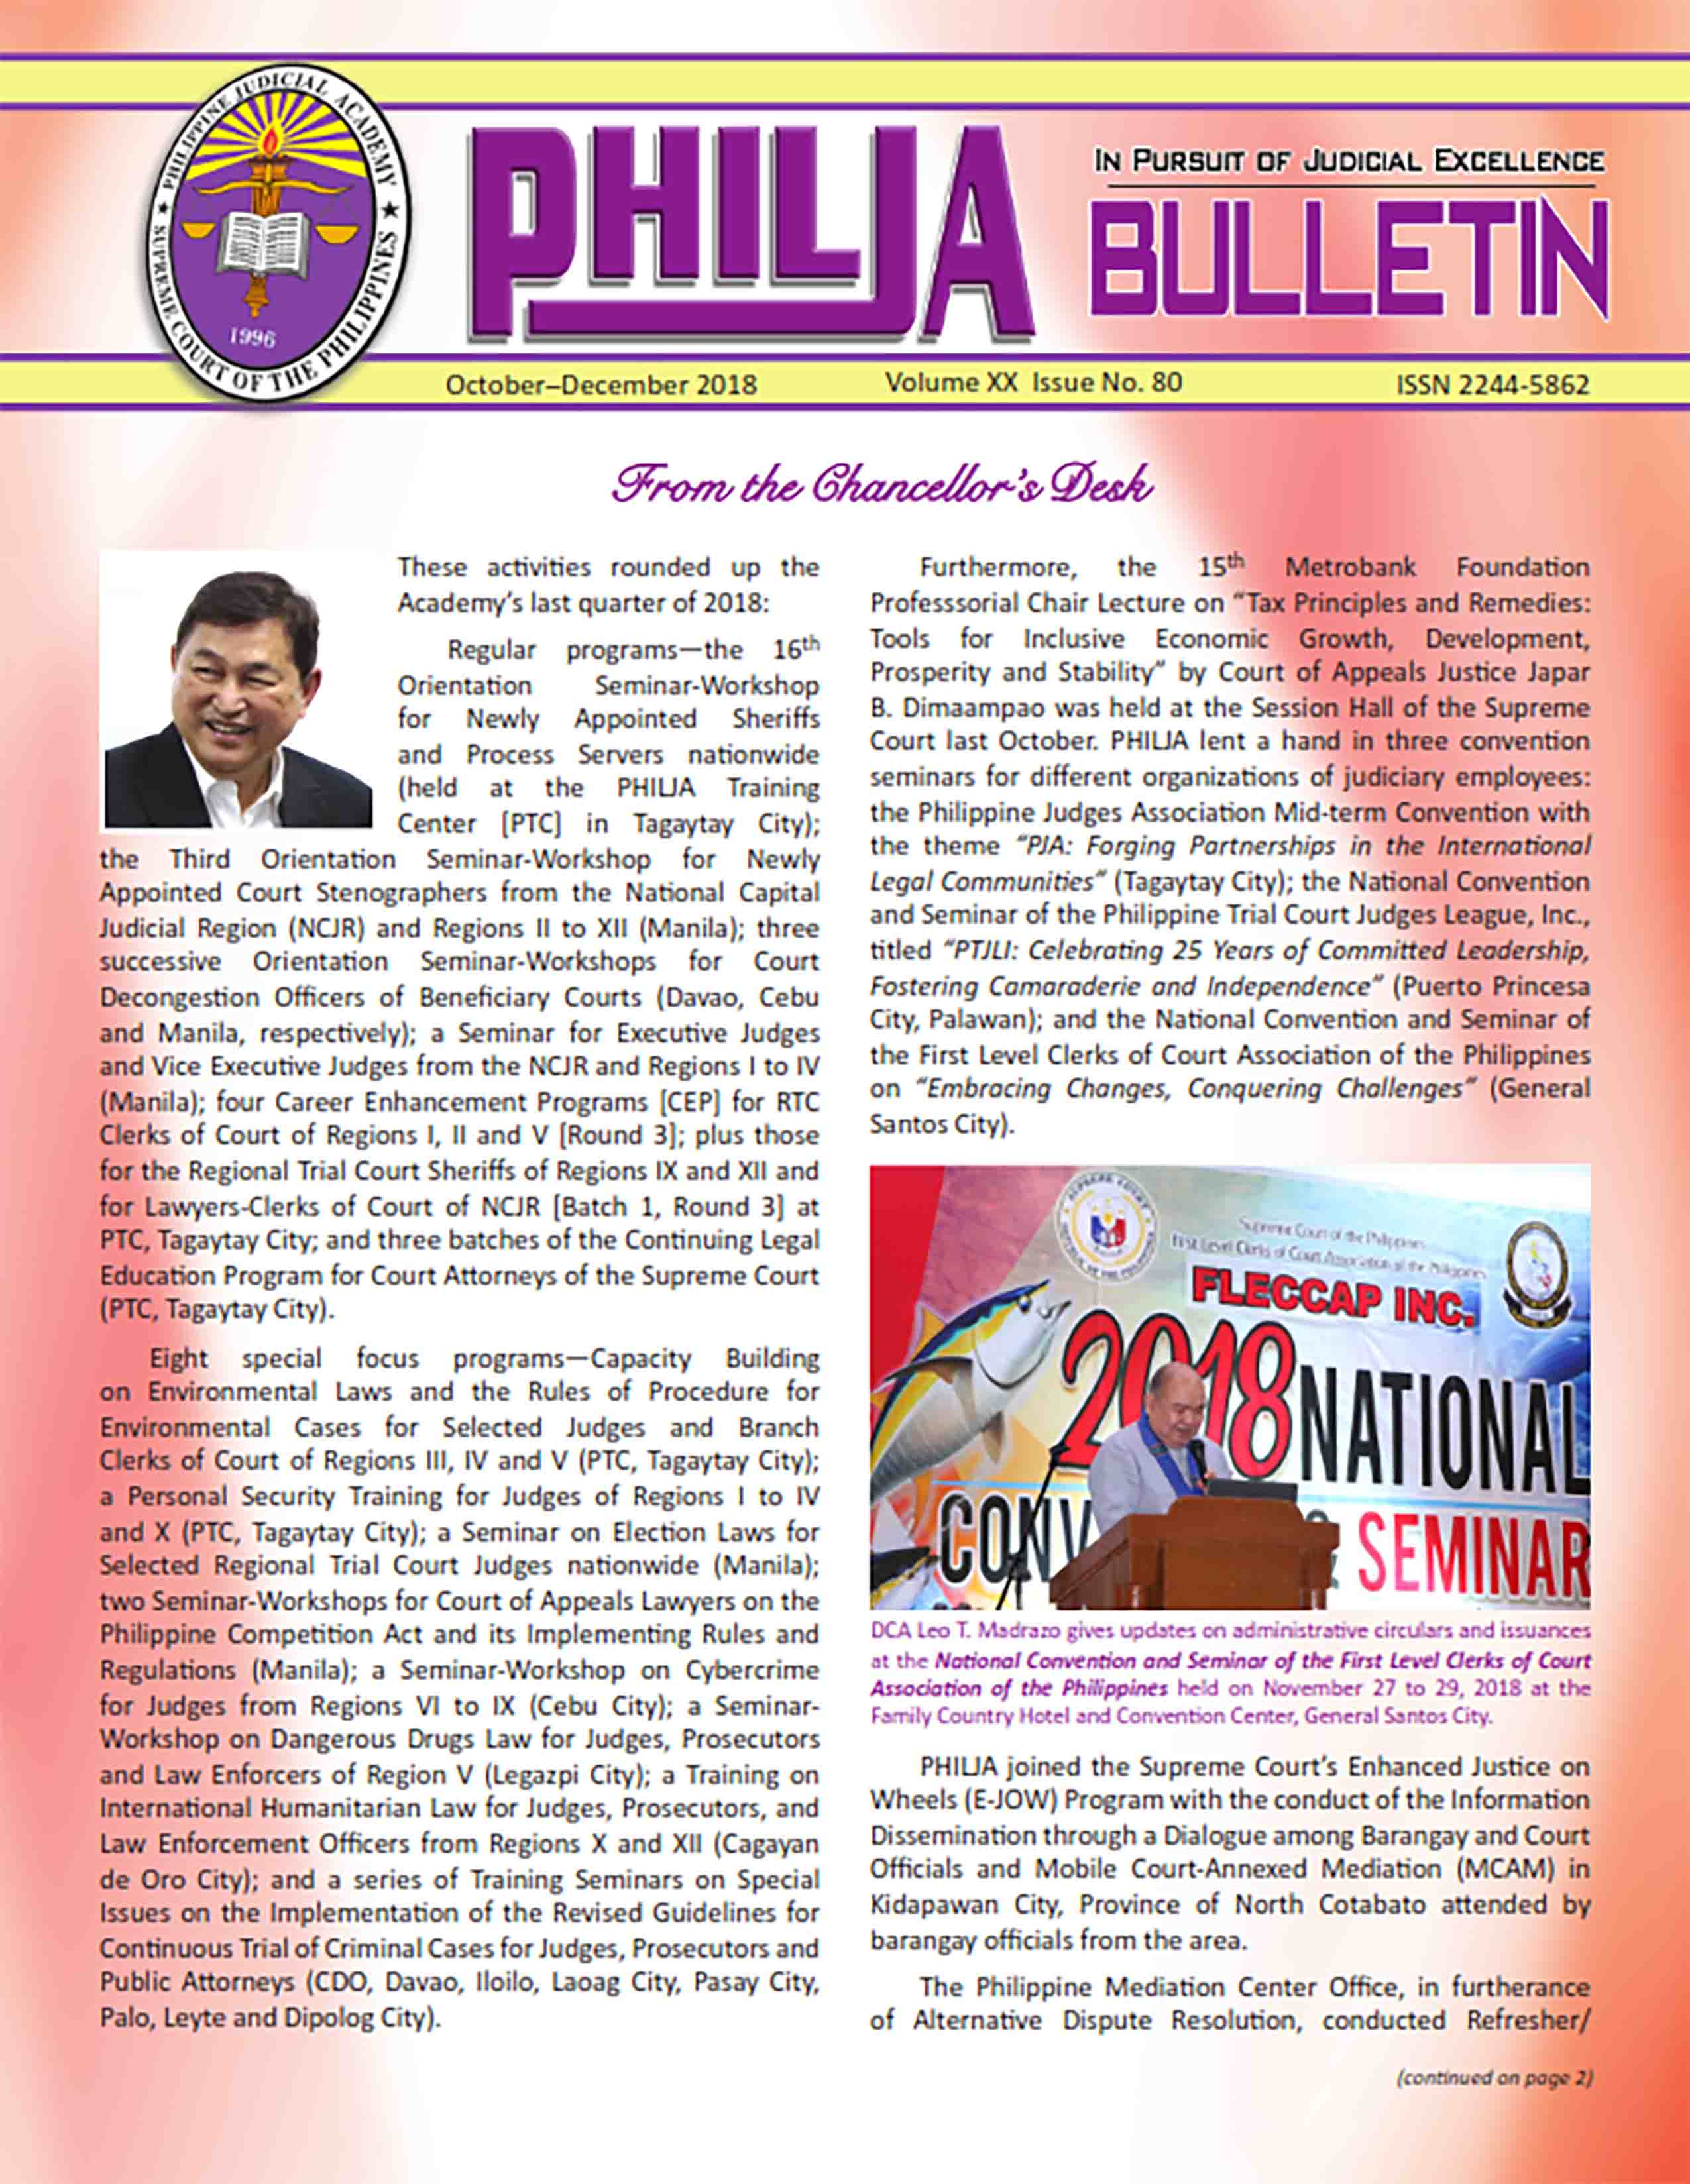 Bulletin 80